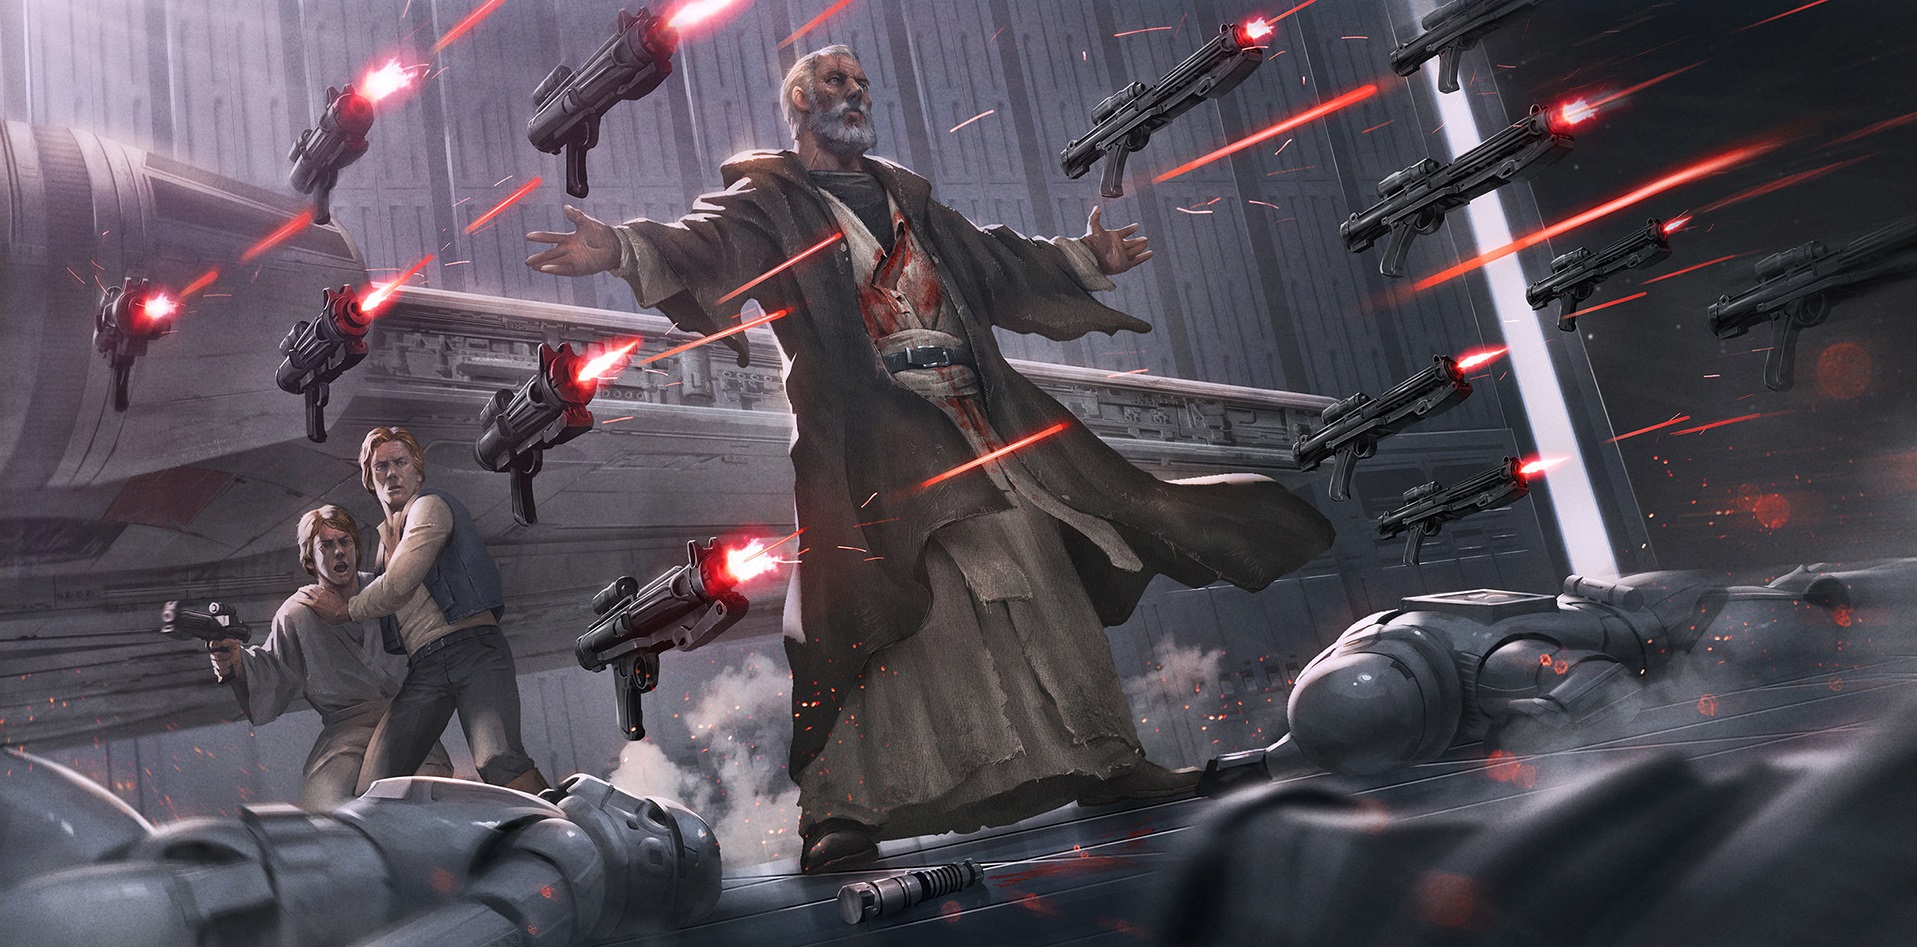 #Han Solo, #stormtrooper, #Obi Wan Kenobi, #Luke Skywalker, #Star Wars Wallpaper. Mocah HD Wallpaper